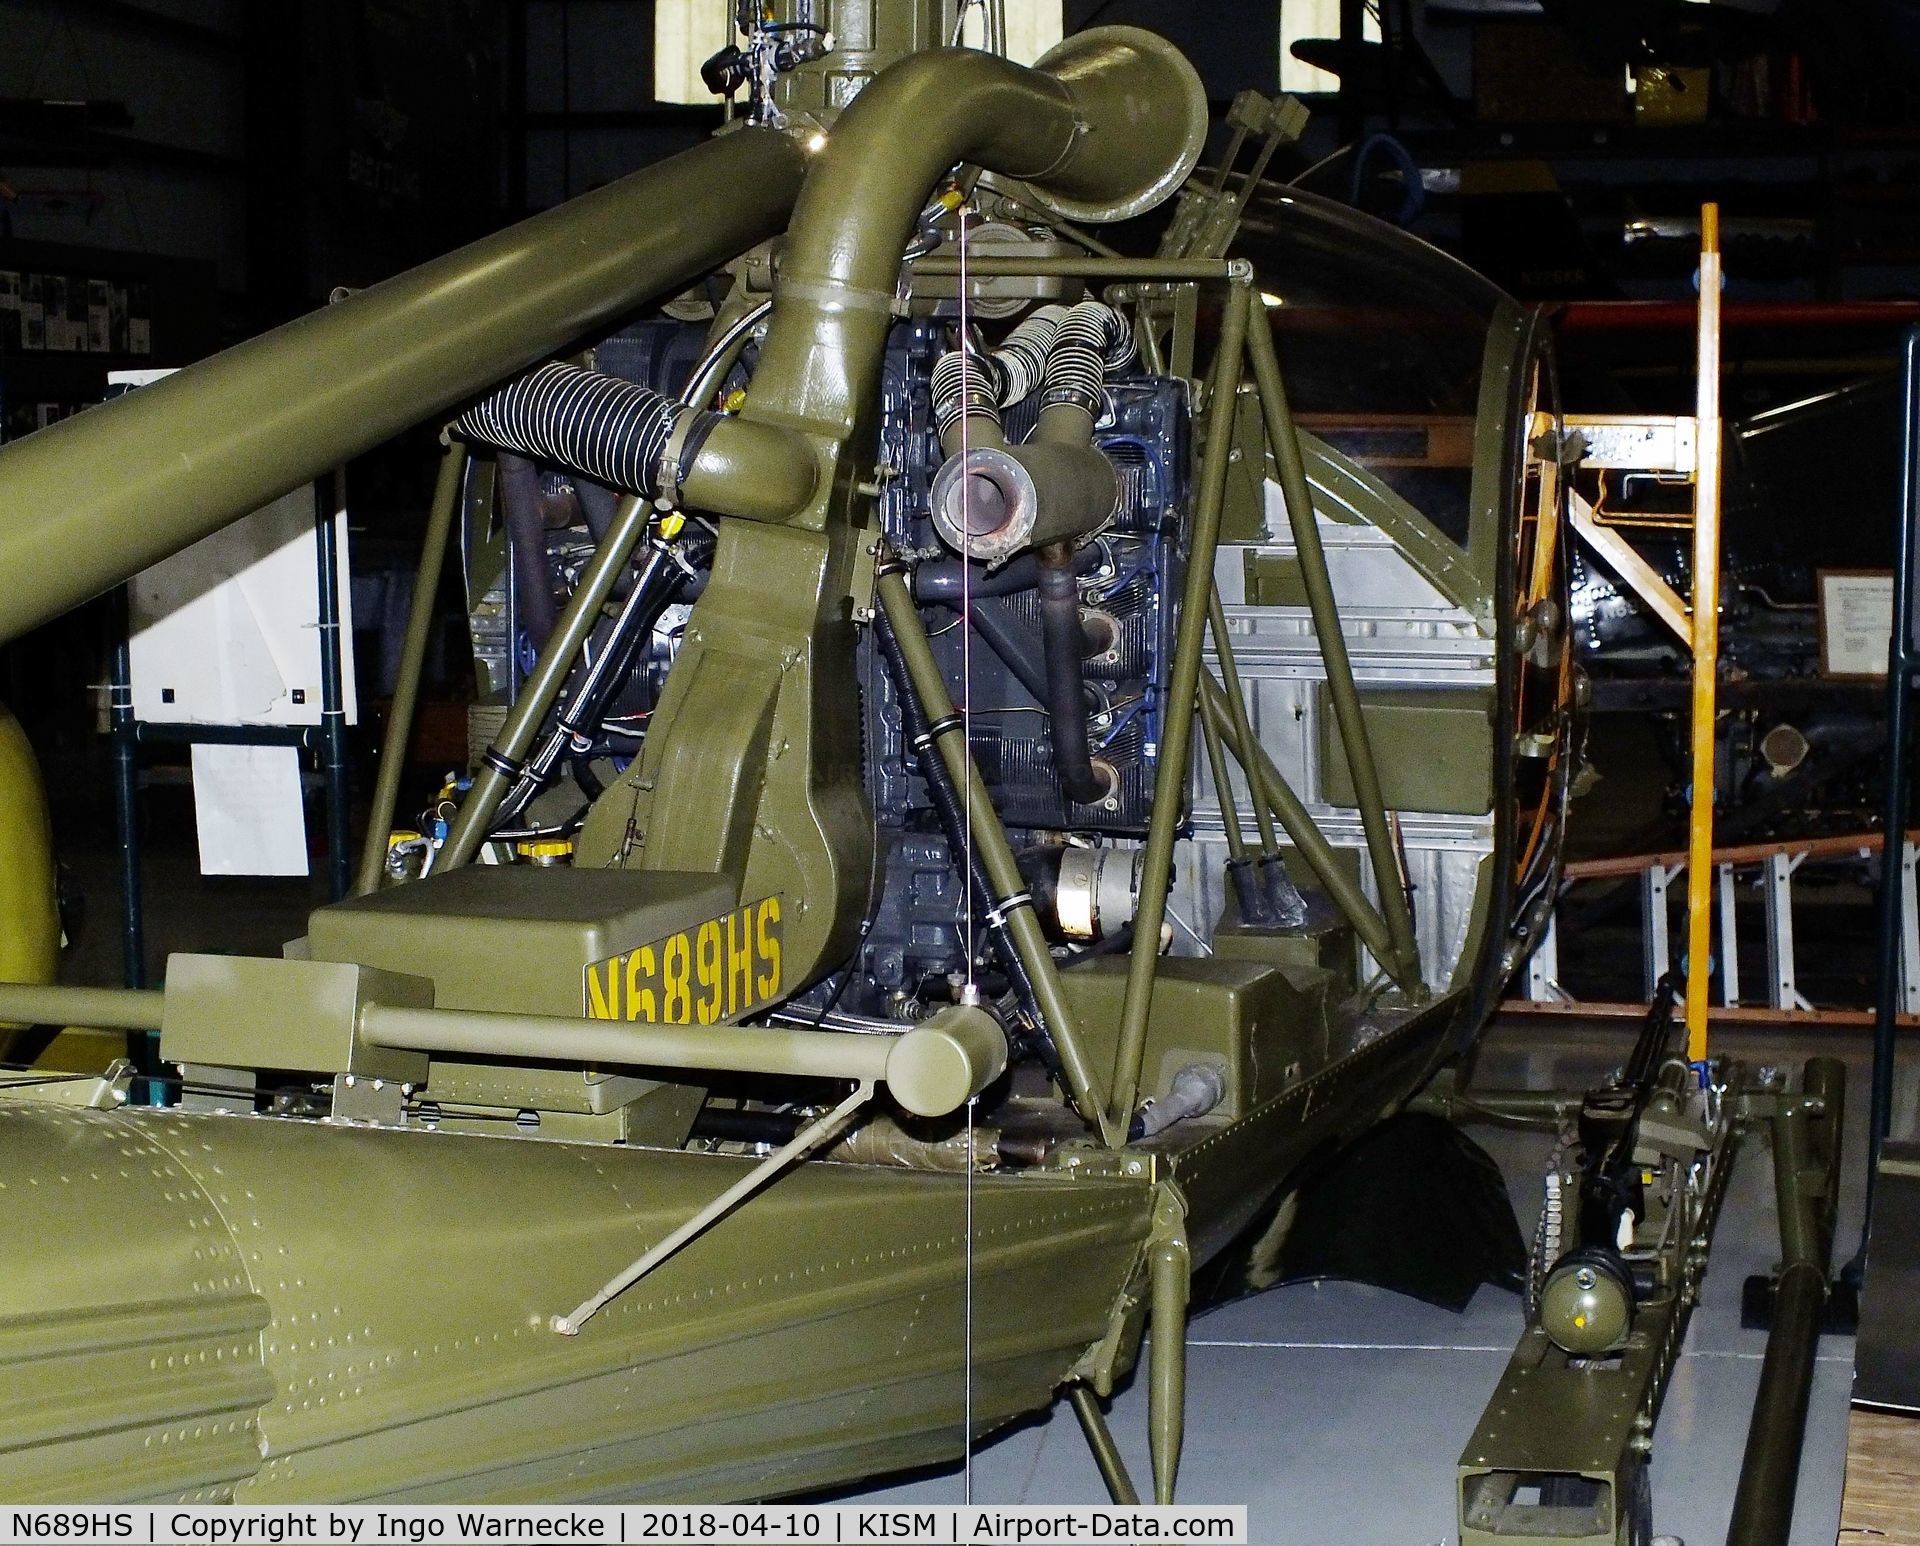 N689HS, 1959 Hiller UH-12D C/N 1169, Hiller UH-12D (H-23D Raven) at the Kissimmee Air Museum, Orlando FL